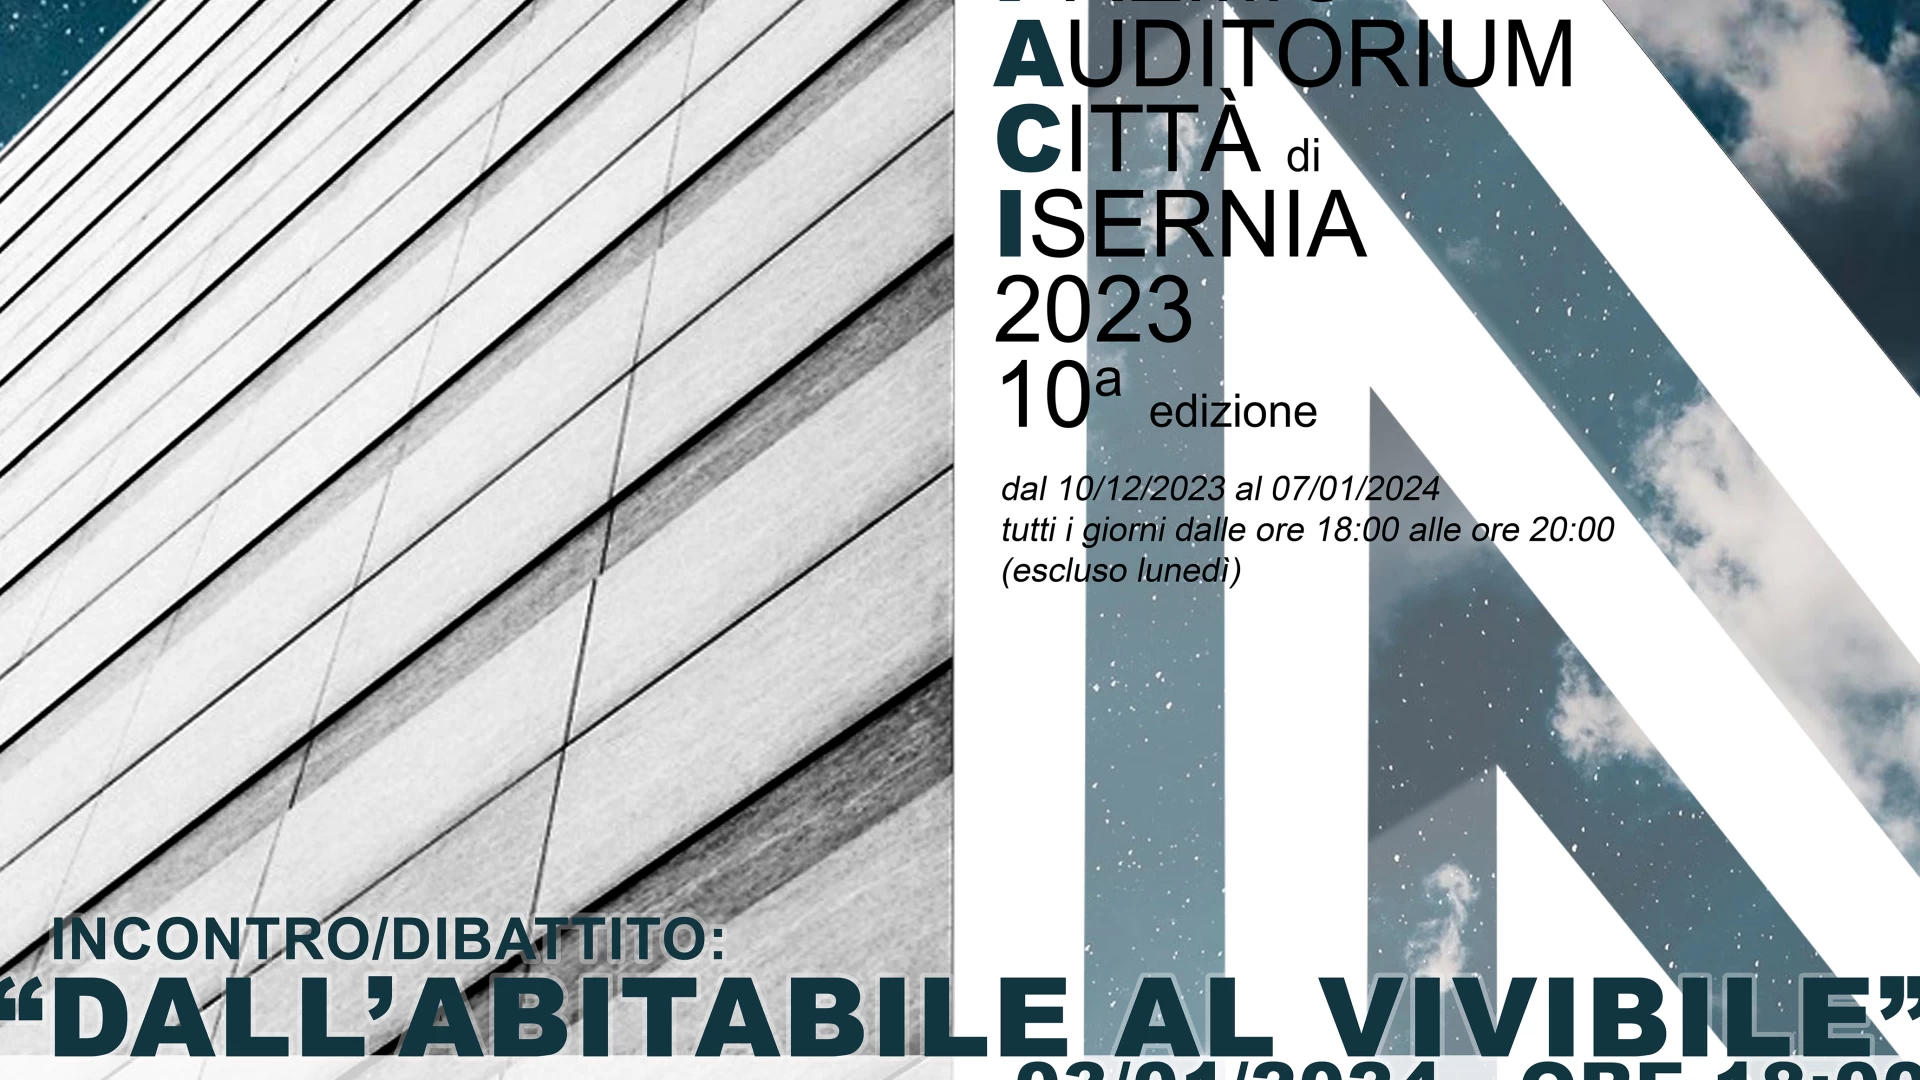 Isernia: premio Auditorium Città di Isernia, in programma il convegno “Dall’Abitabile al vivibile”. Evento previsto il 3 gennaio.